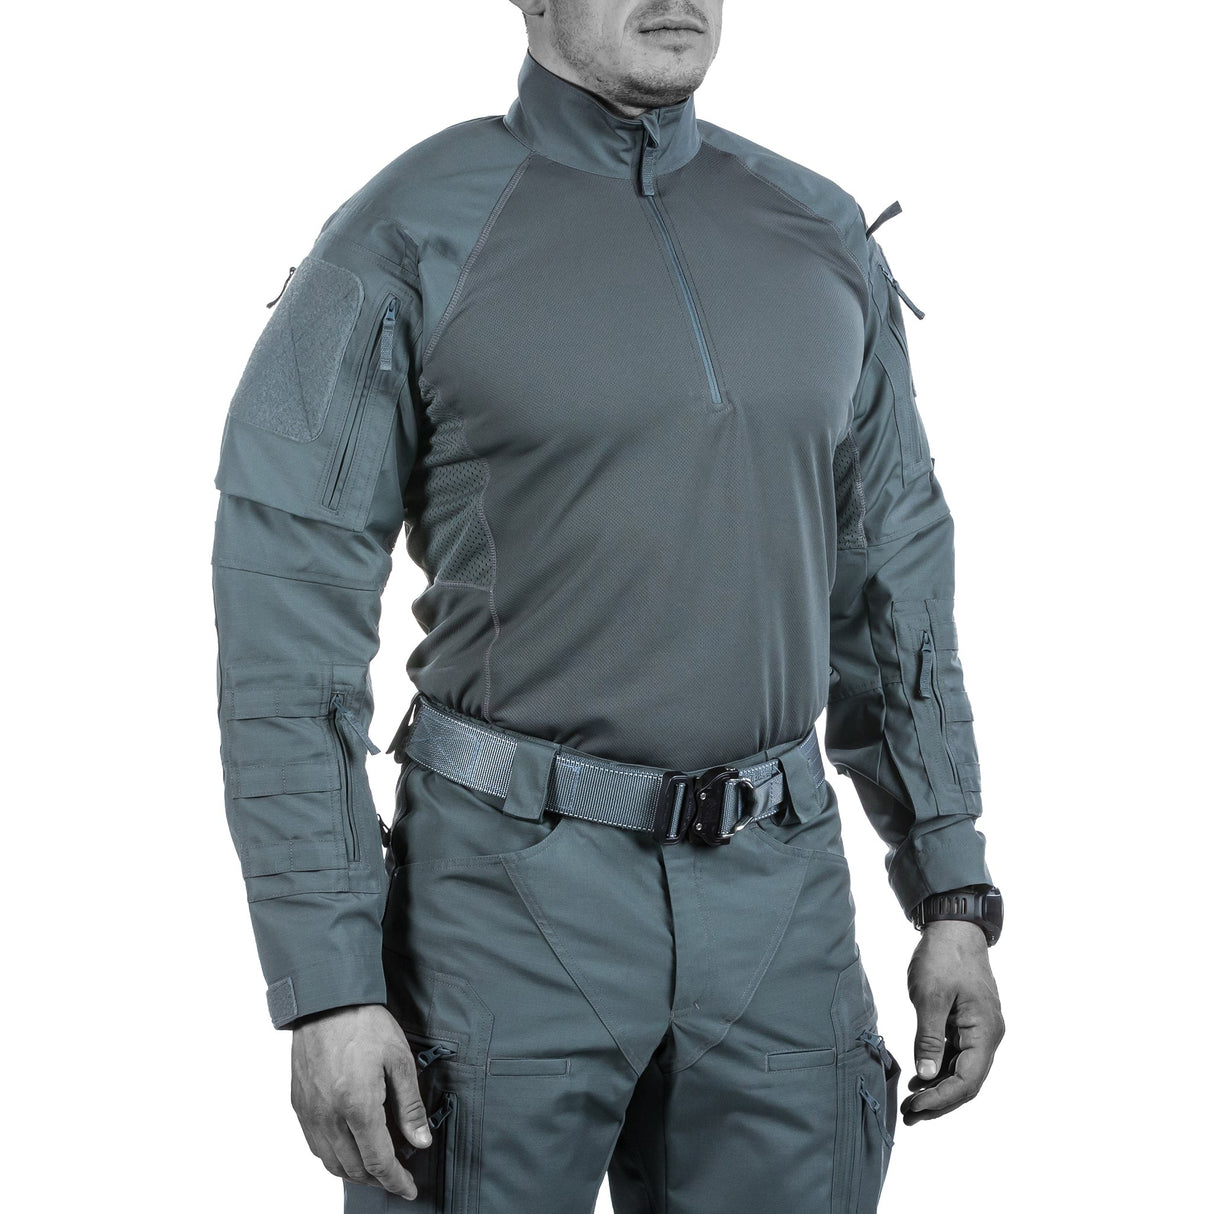 UF PRO Combat Gear: Comfortable, dry, focused with Striker XT Gen.2 Combat Shirt.